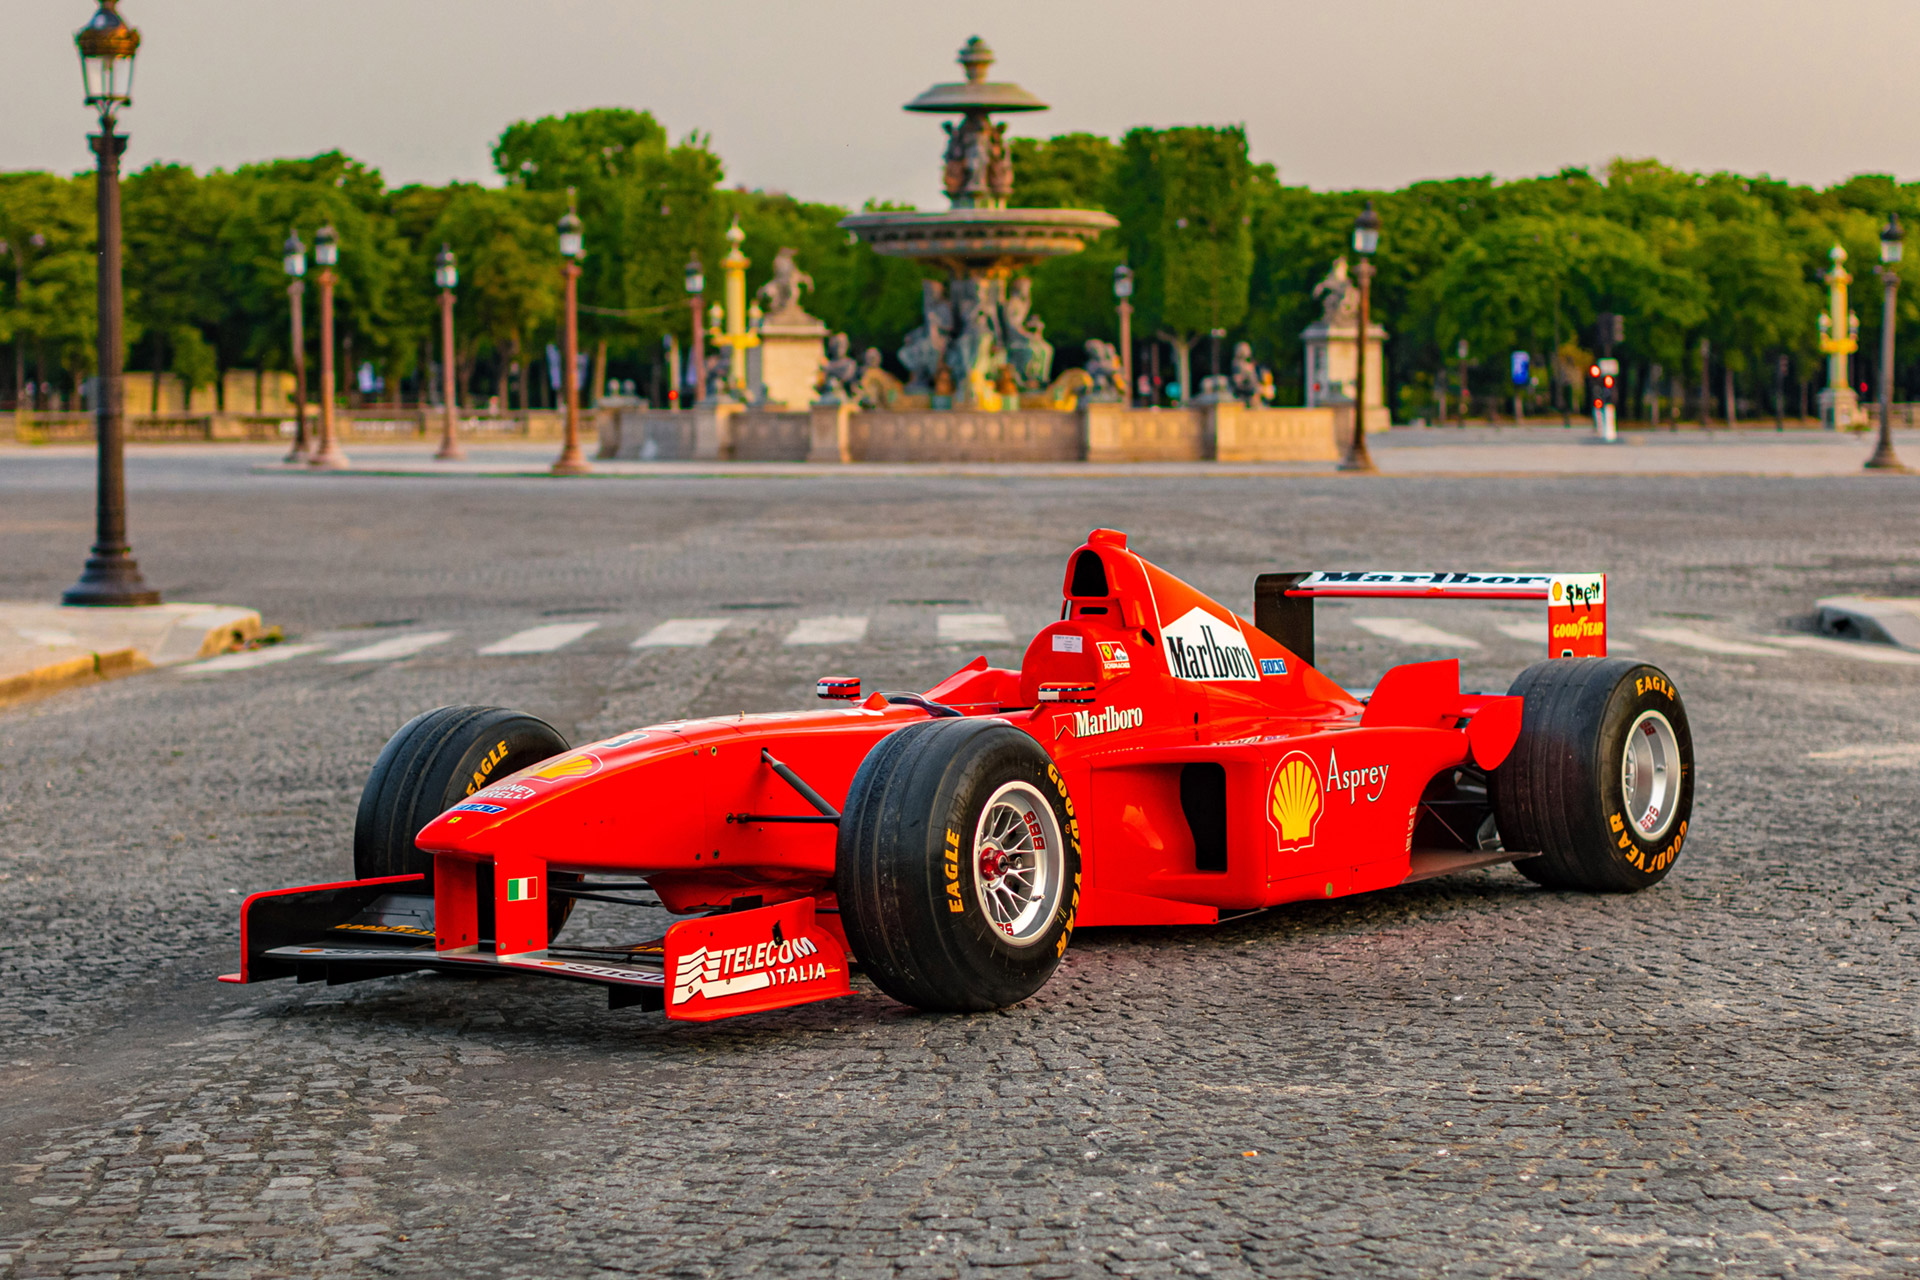 Гоночный автомобиль Ferrari F300 1998 года Михаэля Шумахера